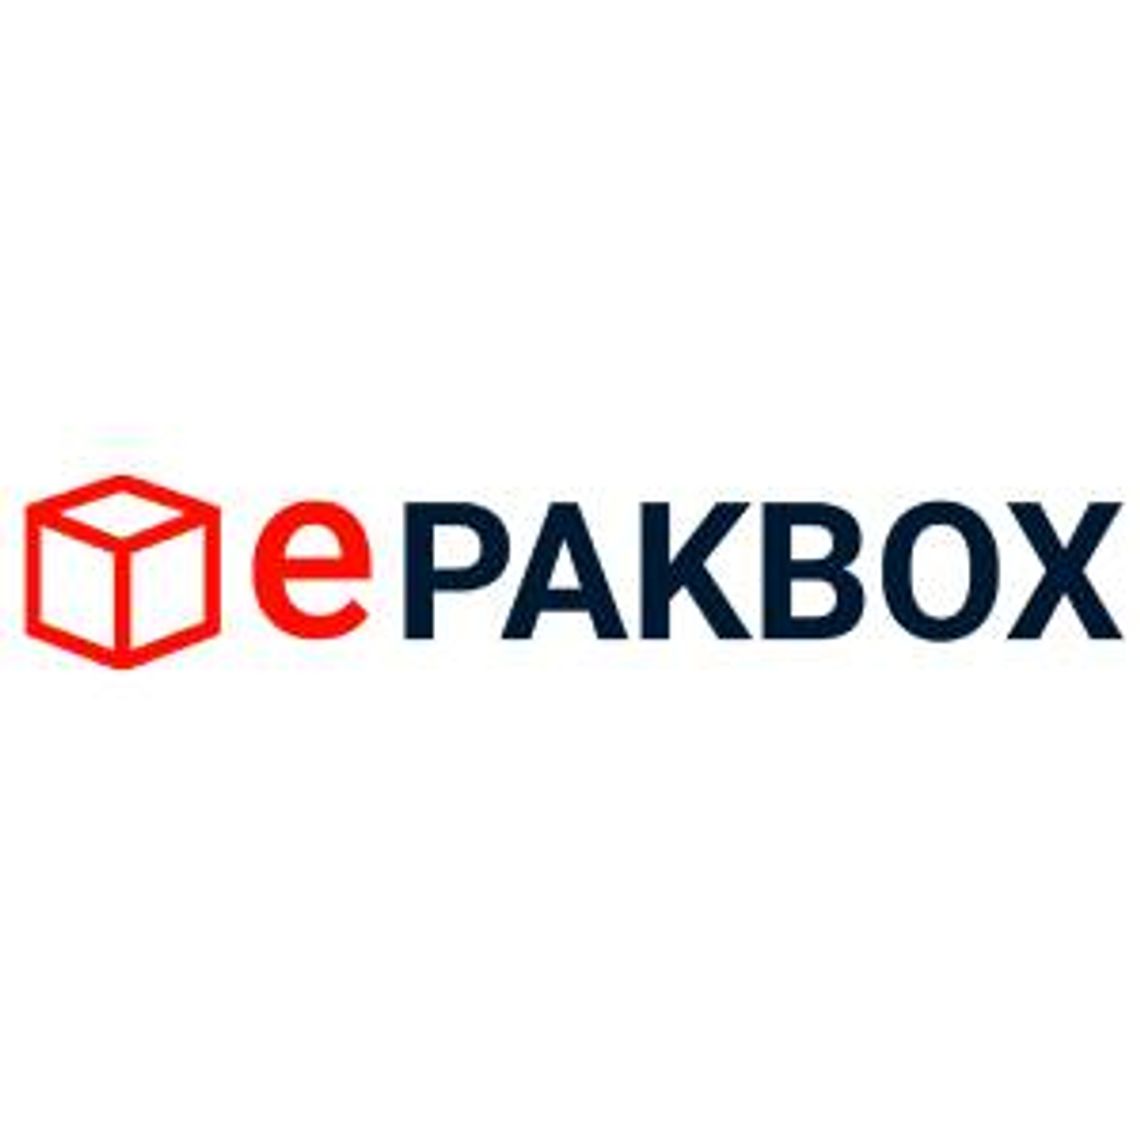 Artykuły niezbędne do pakowania - EpakBox